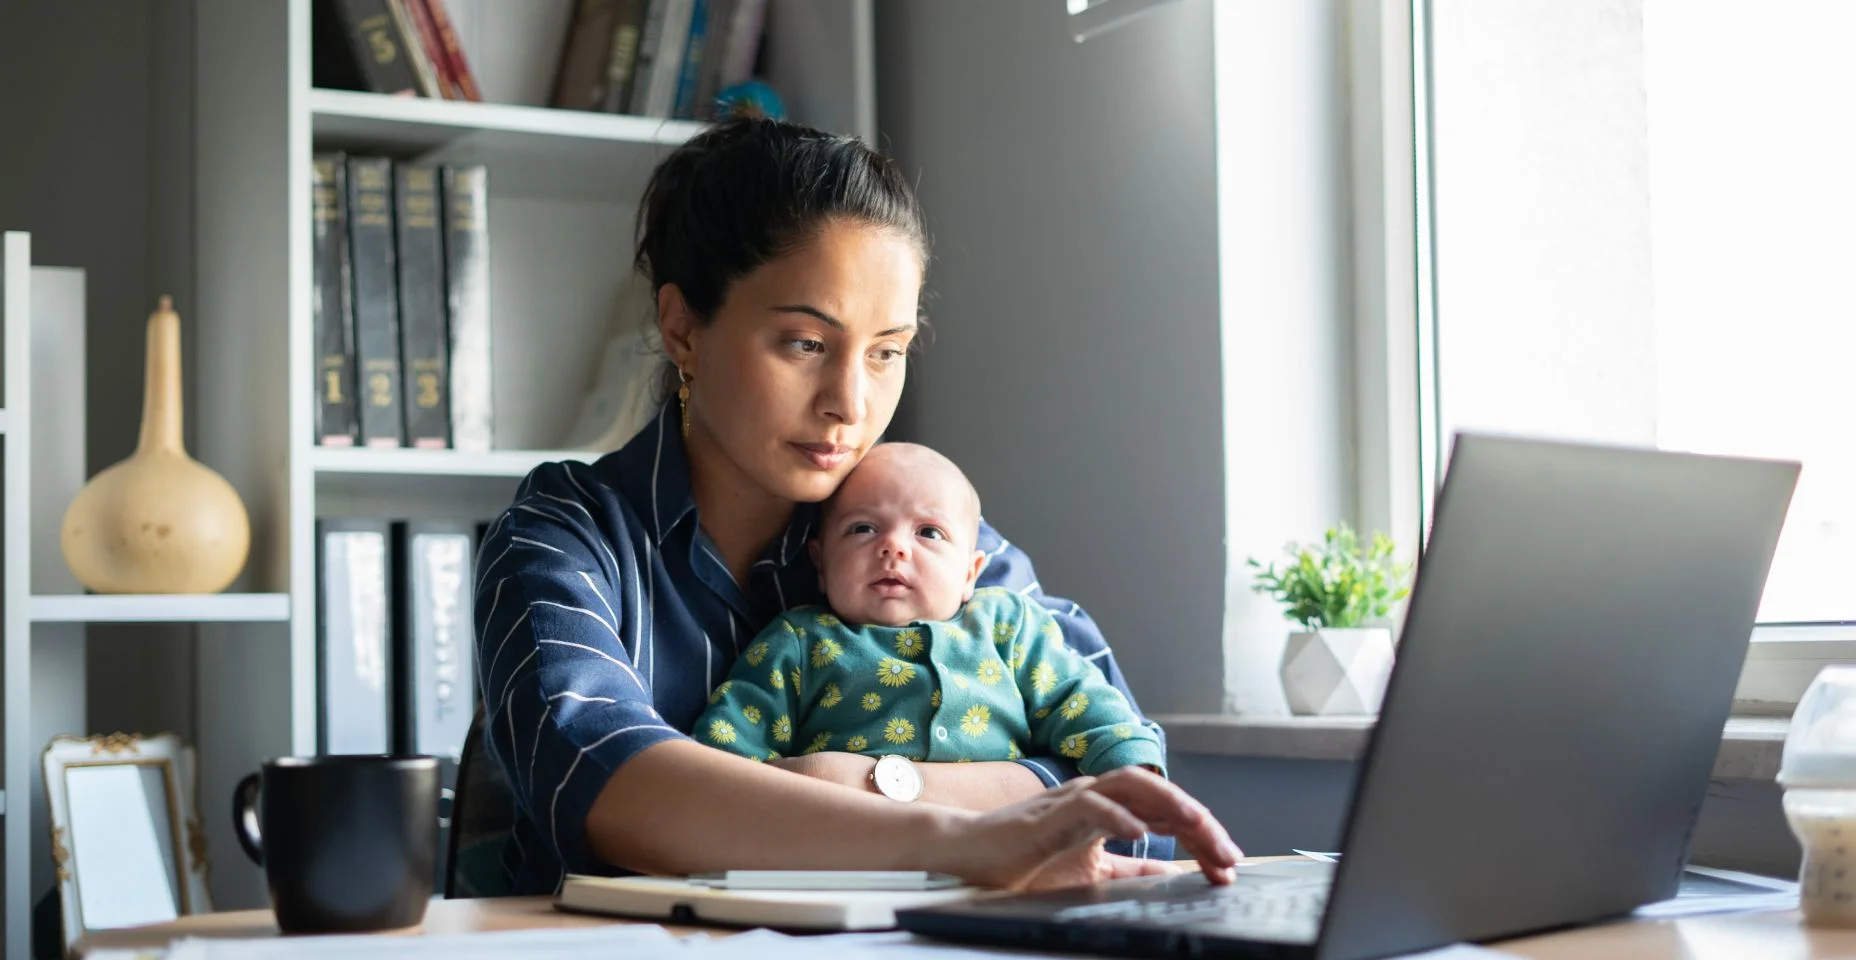 Mulher nova que trabalha com seu bebê no home office